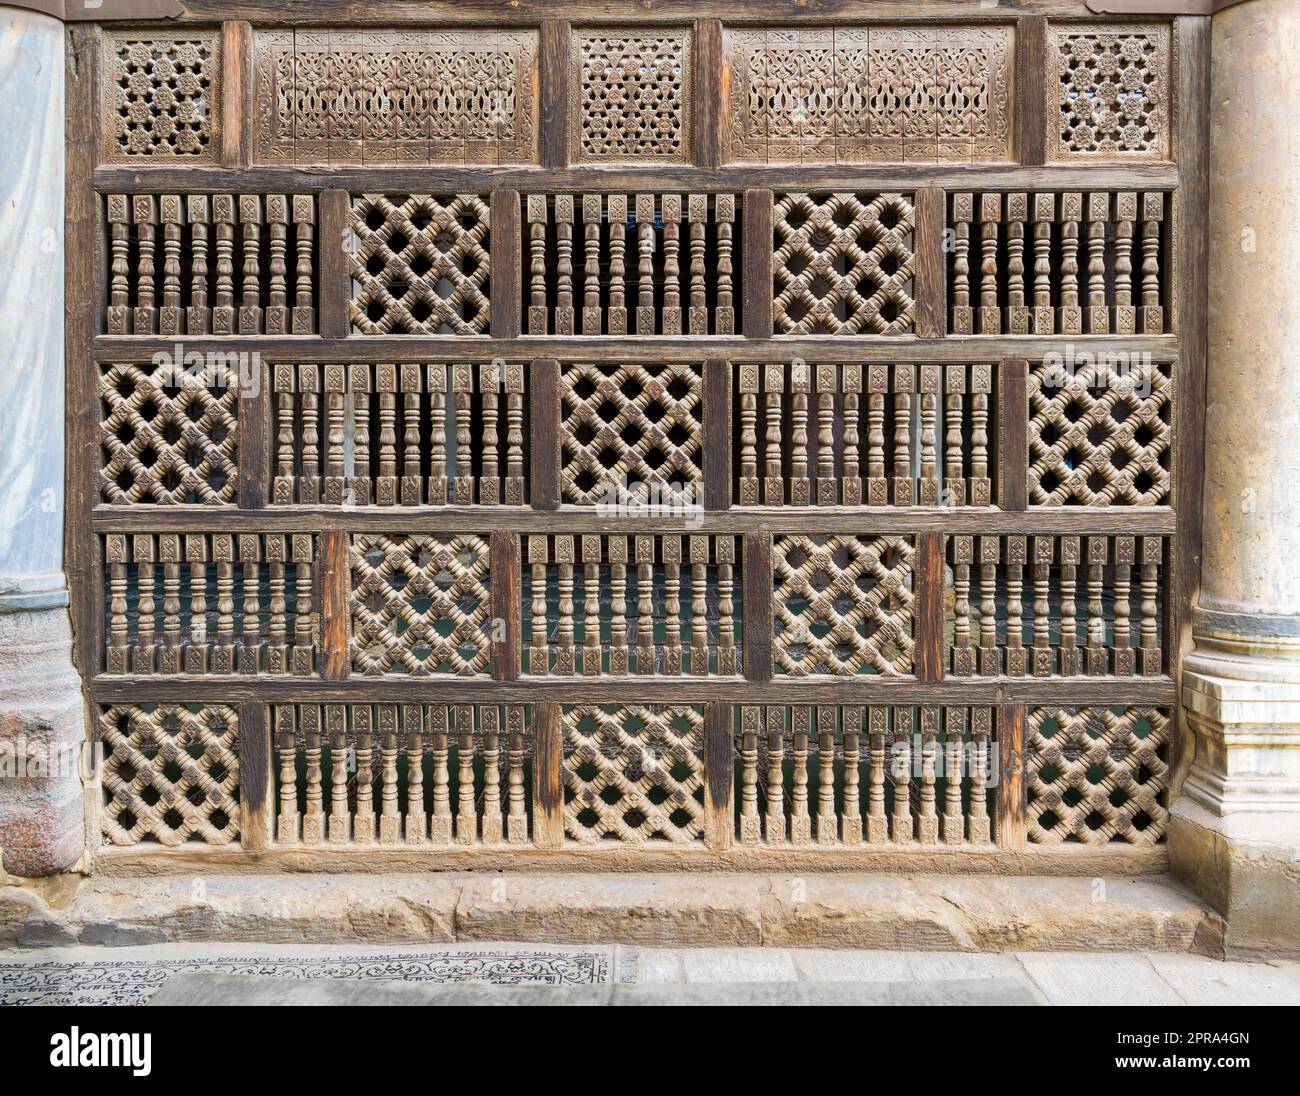 Vorderansicht der verblüffenden hölzernen Arabiskenmauer - Mashrabiya, Kairo, Ägypten Stockfoto